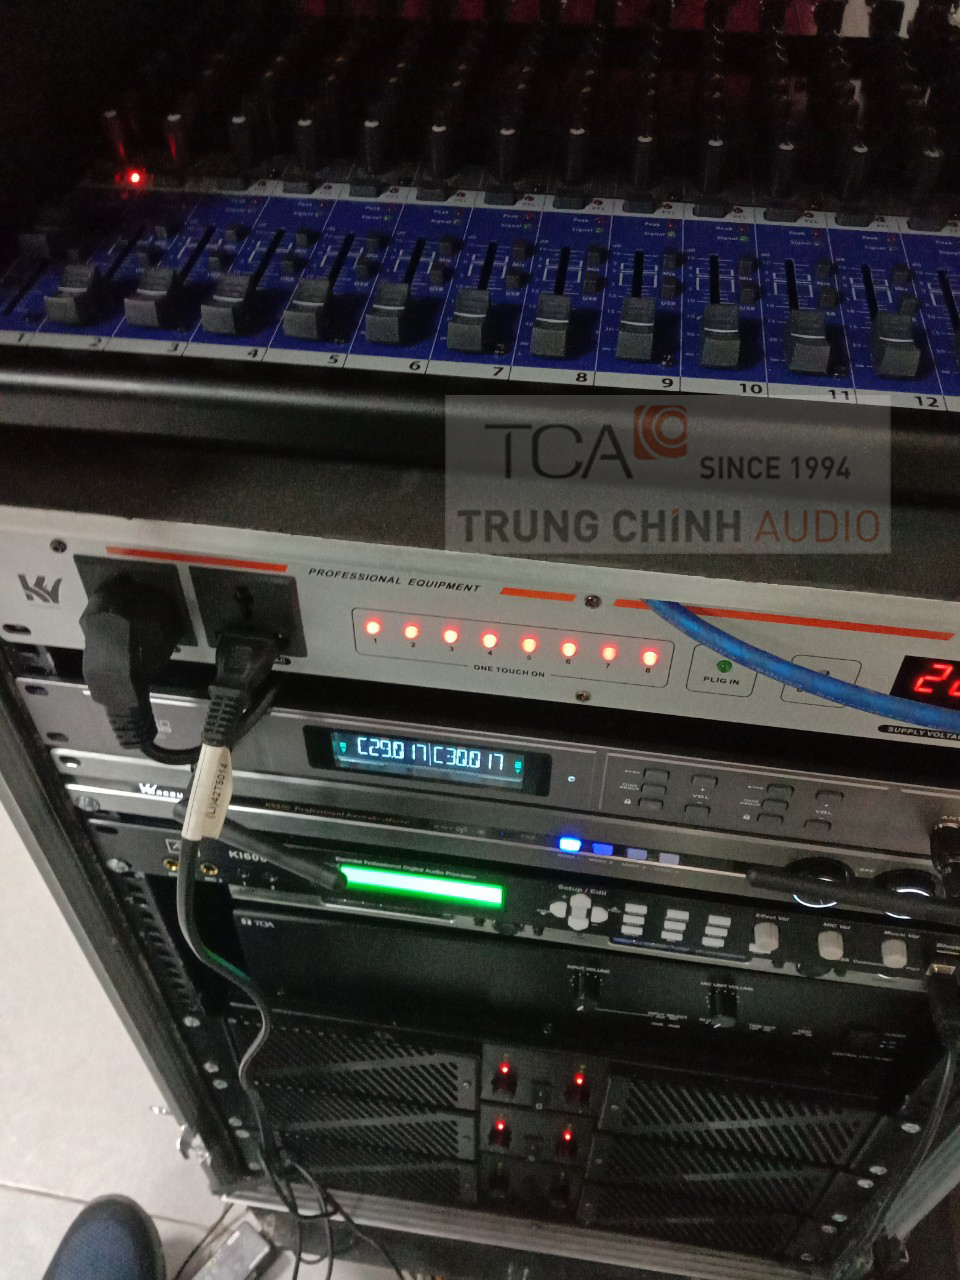 Lắp đặt hệ thống âm thanh phòng họp hội trường TOA TS-780 tại Tỉnh ủy Hà Tĩnh